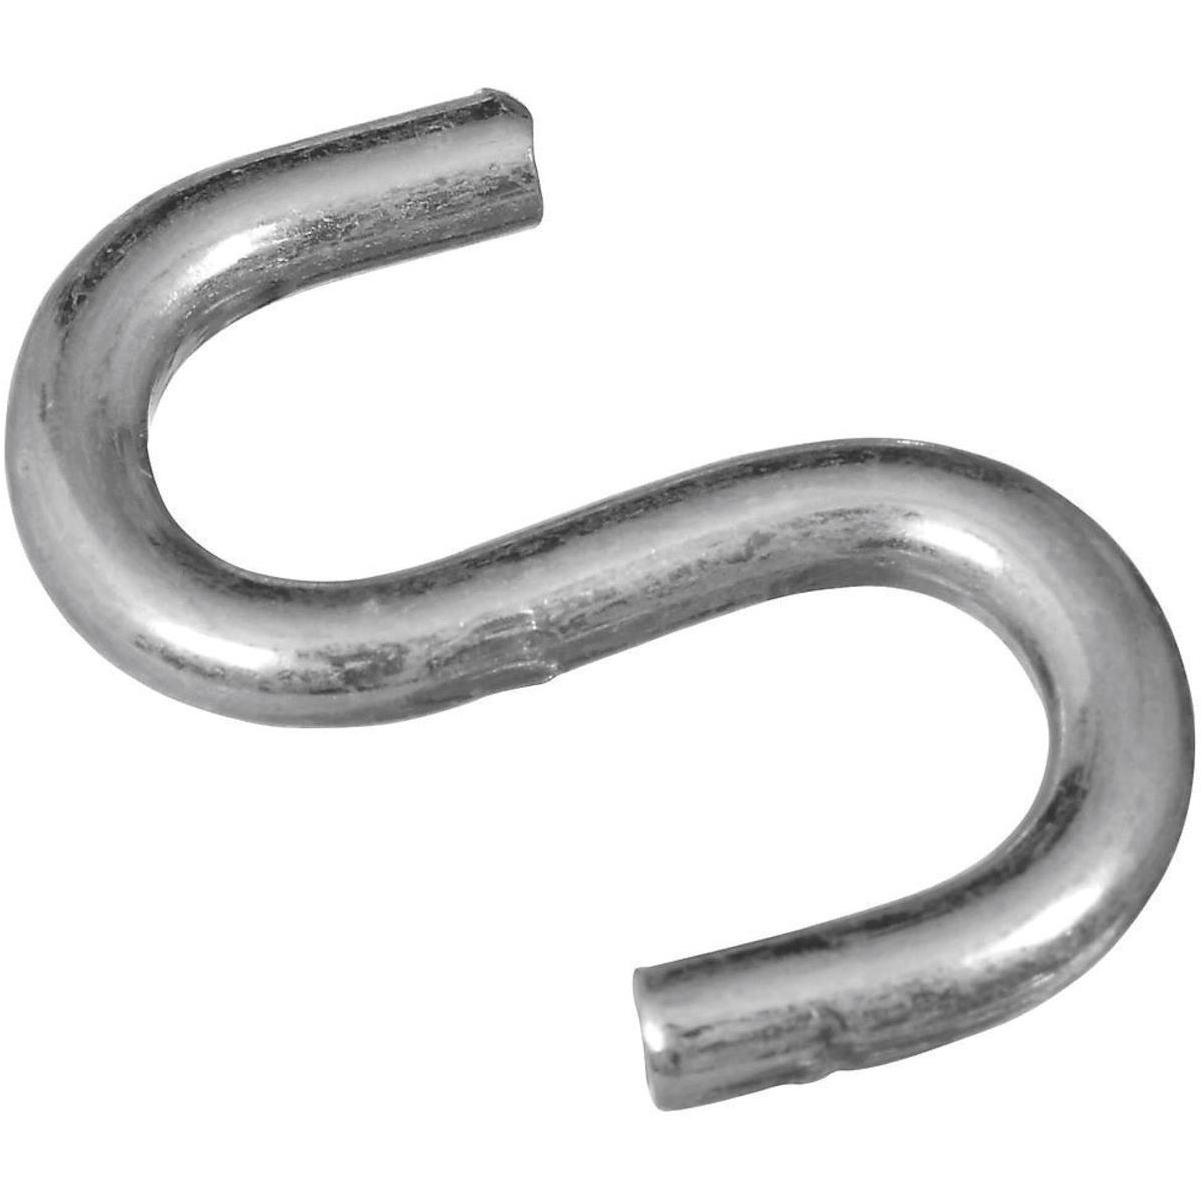 304 Stainless Steel Screw-in Hooks, Metal Hooks, Heavy-Duty Screw Eye Hooks,  Wood Terminal Ring Eye Hooks, Hammock Brackets. (4 pcs +1 pcs 1/4 hex  Shank Wing nut Driver), Screw-in Hooks 